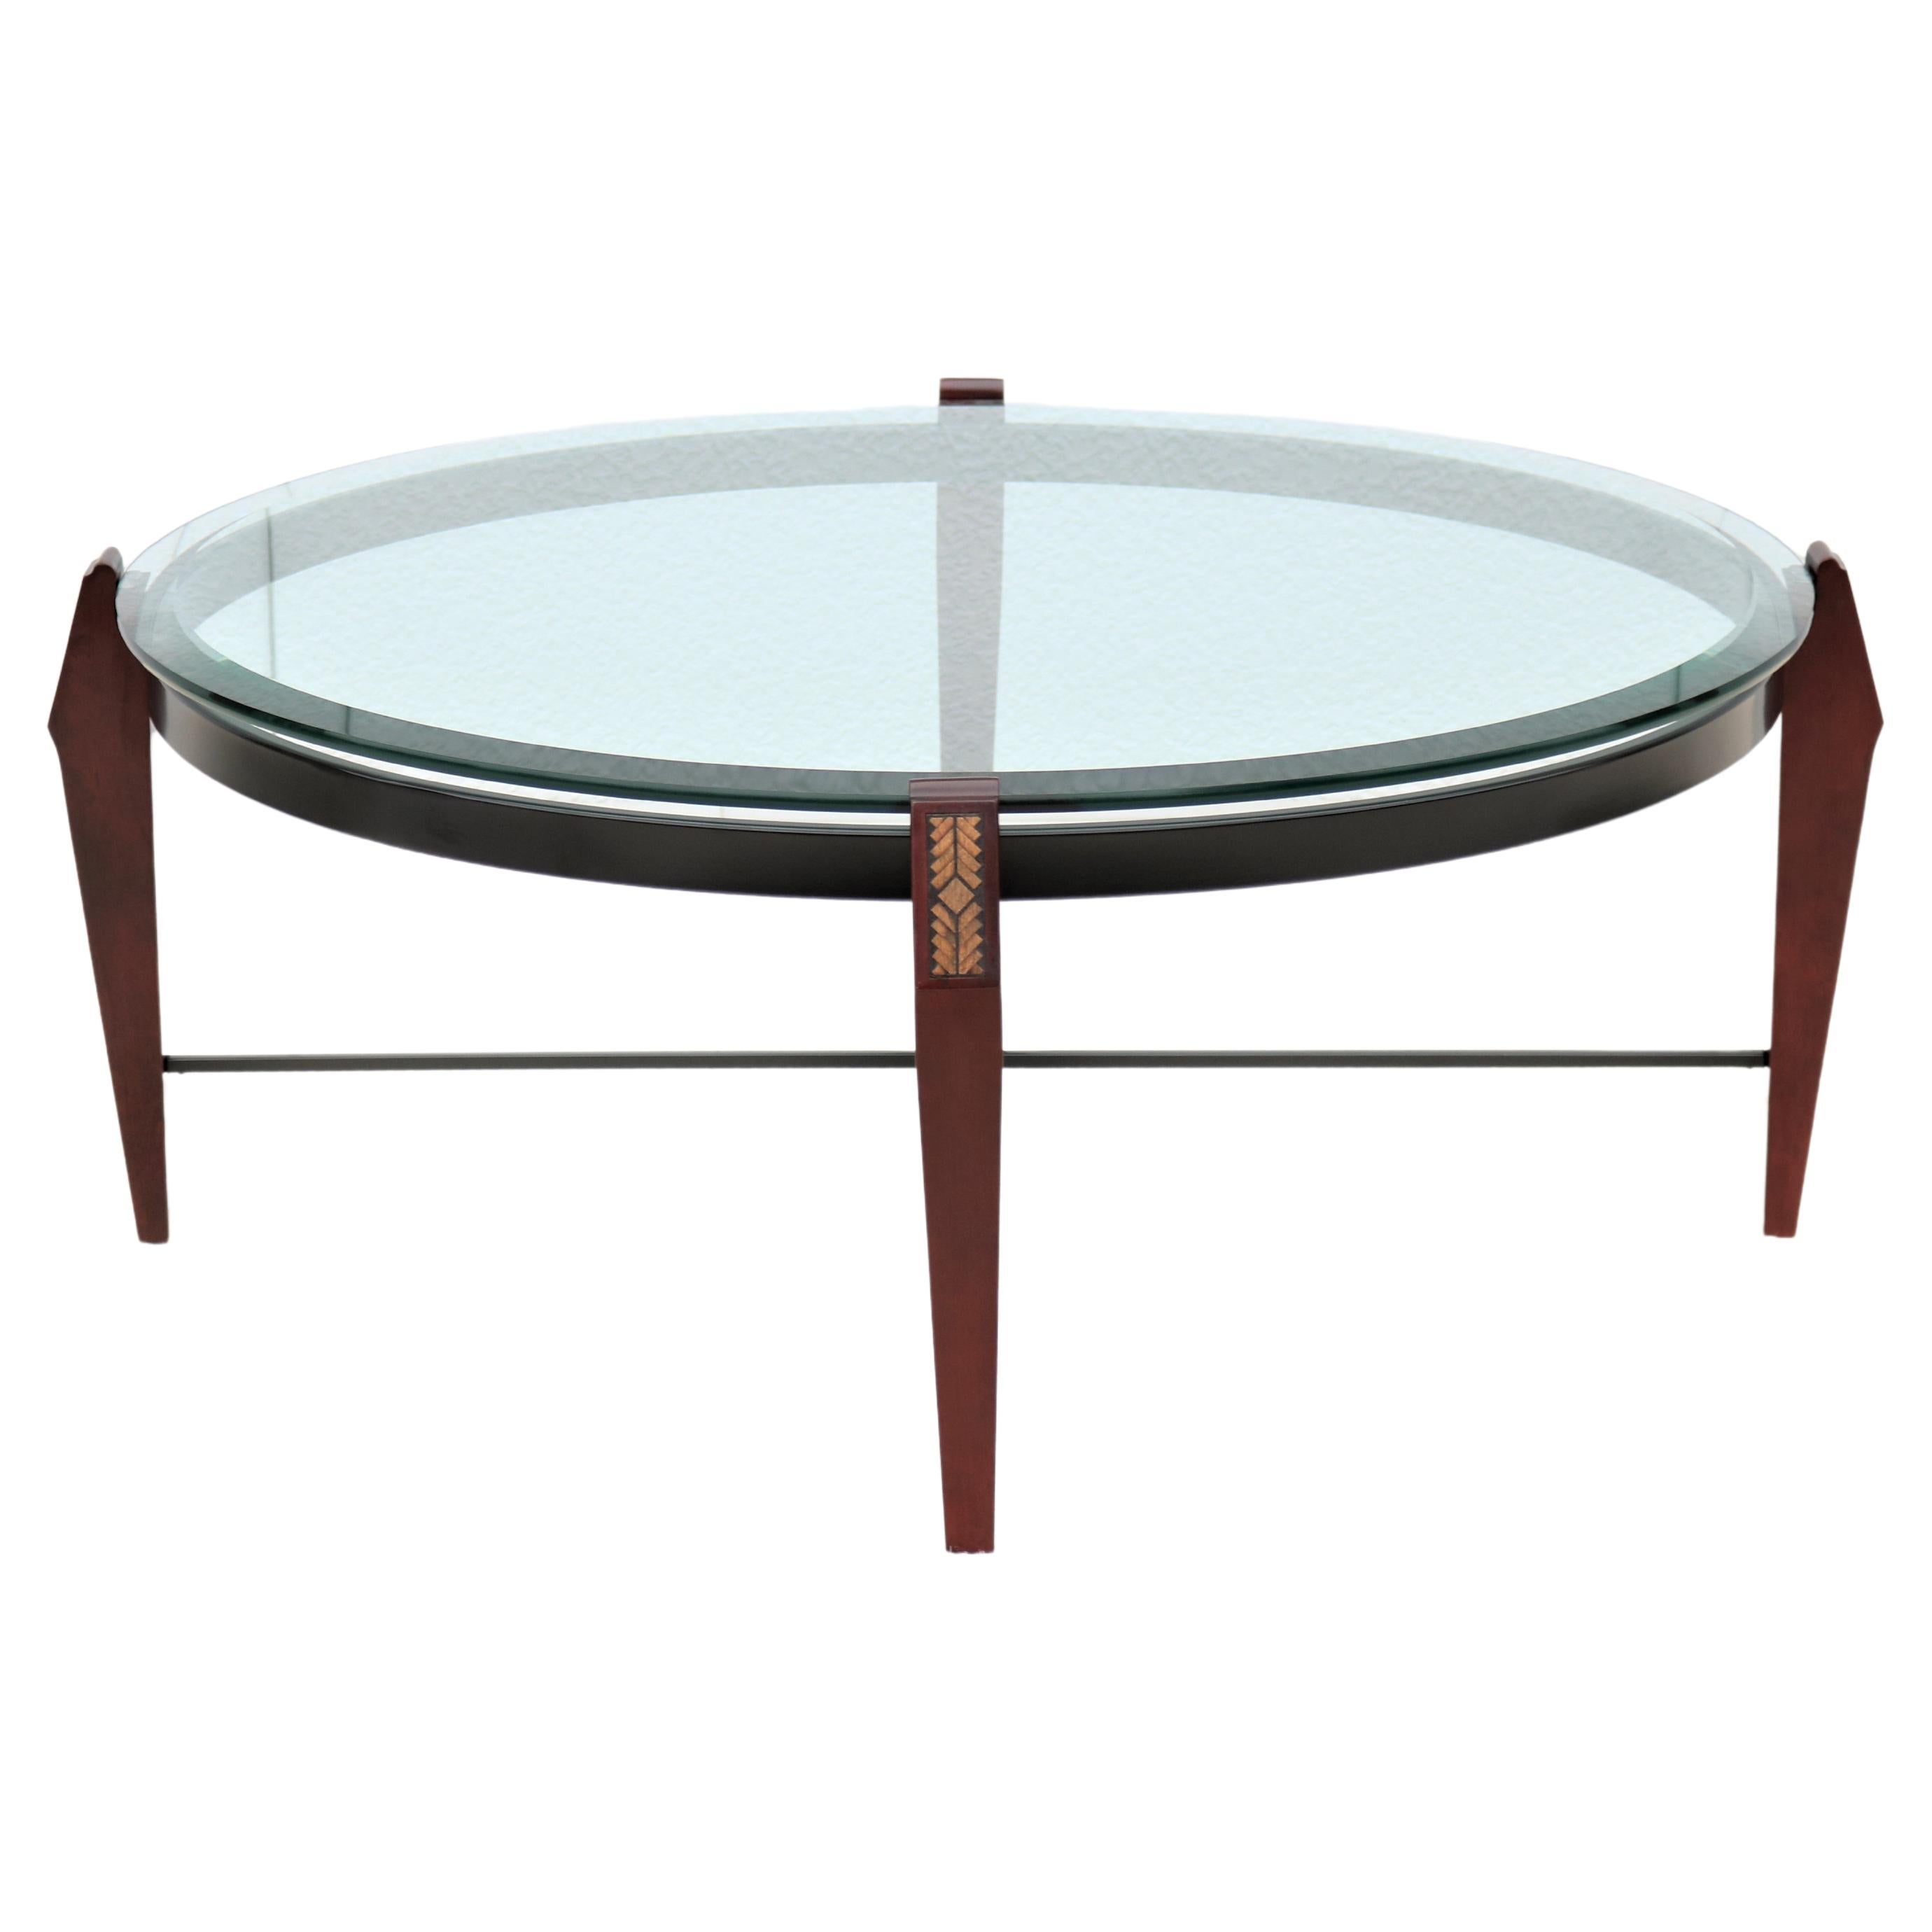 Table basse ronde traditionnelle en bois de cerisier et verre transparent